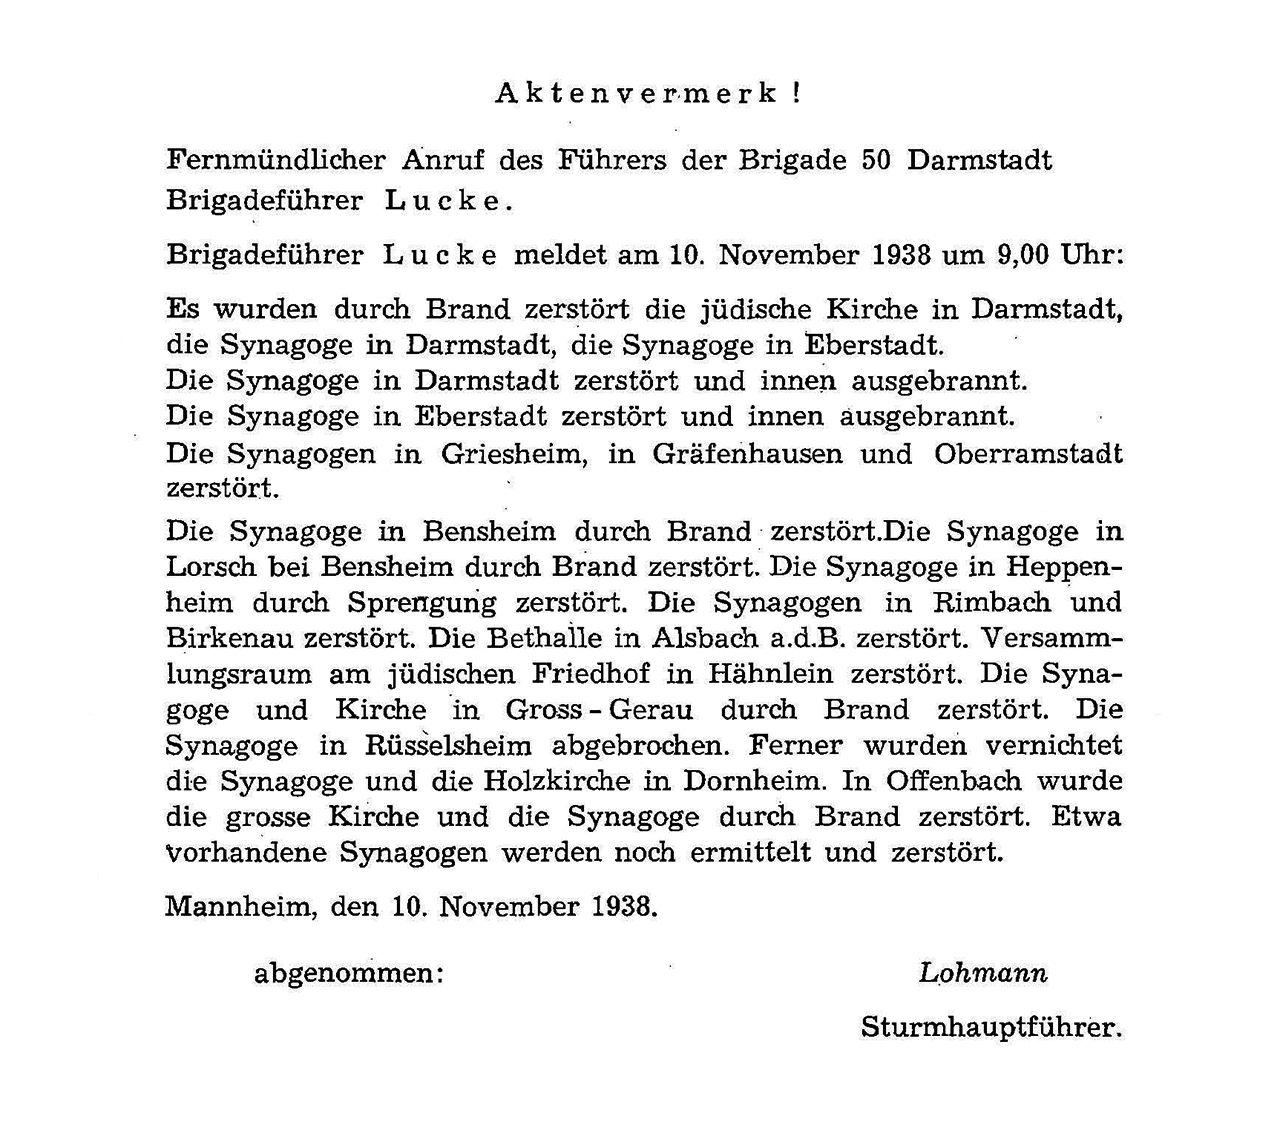 Aktenvermerk über die Zerstörung südhessischer Synagogen am 10. November 1938